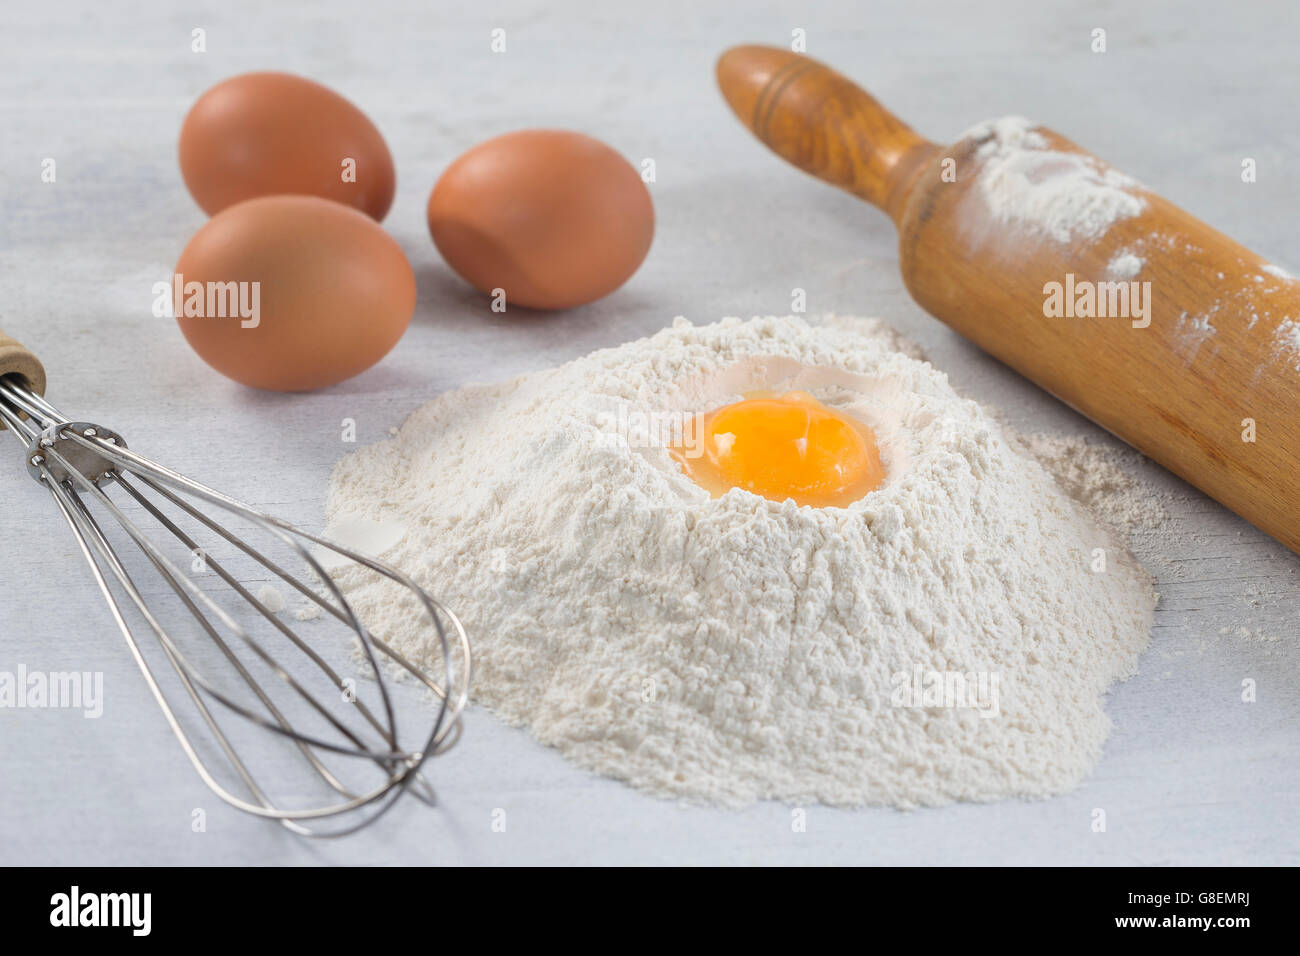 Uova, farina, burro e utensili da cucina Foto Stock